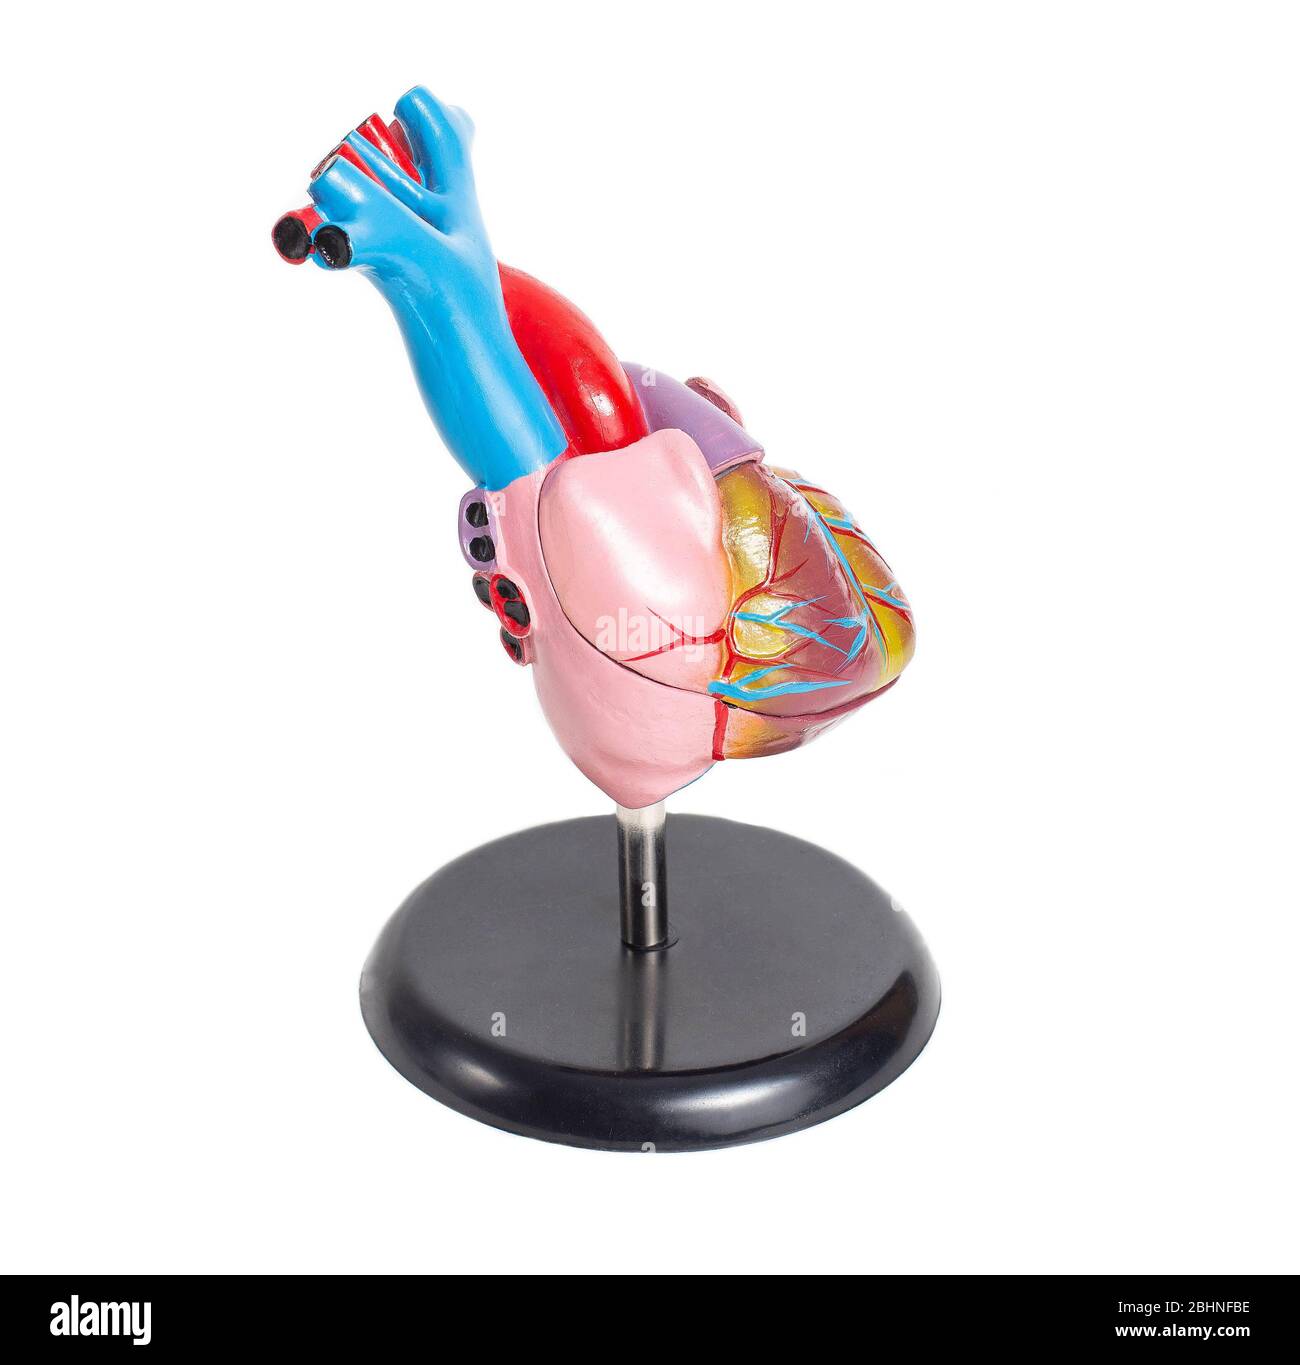 Simulazione di un cuore di organo umano su uno sfondo bianco, isolare. Struttura anatomica e fisiologia del cuore, del ventricolo destro e sinistro e dell'atrio. Foto Stock